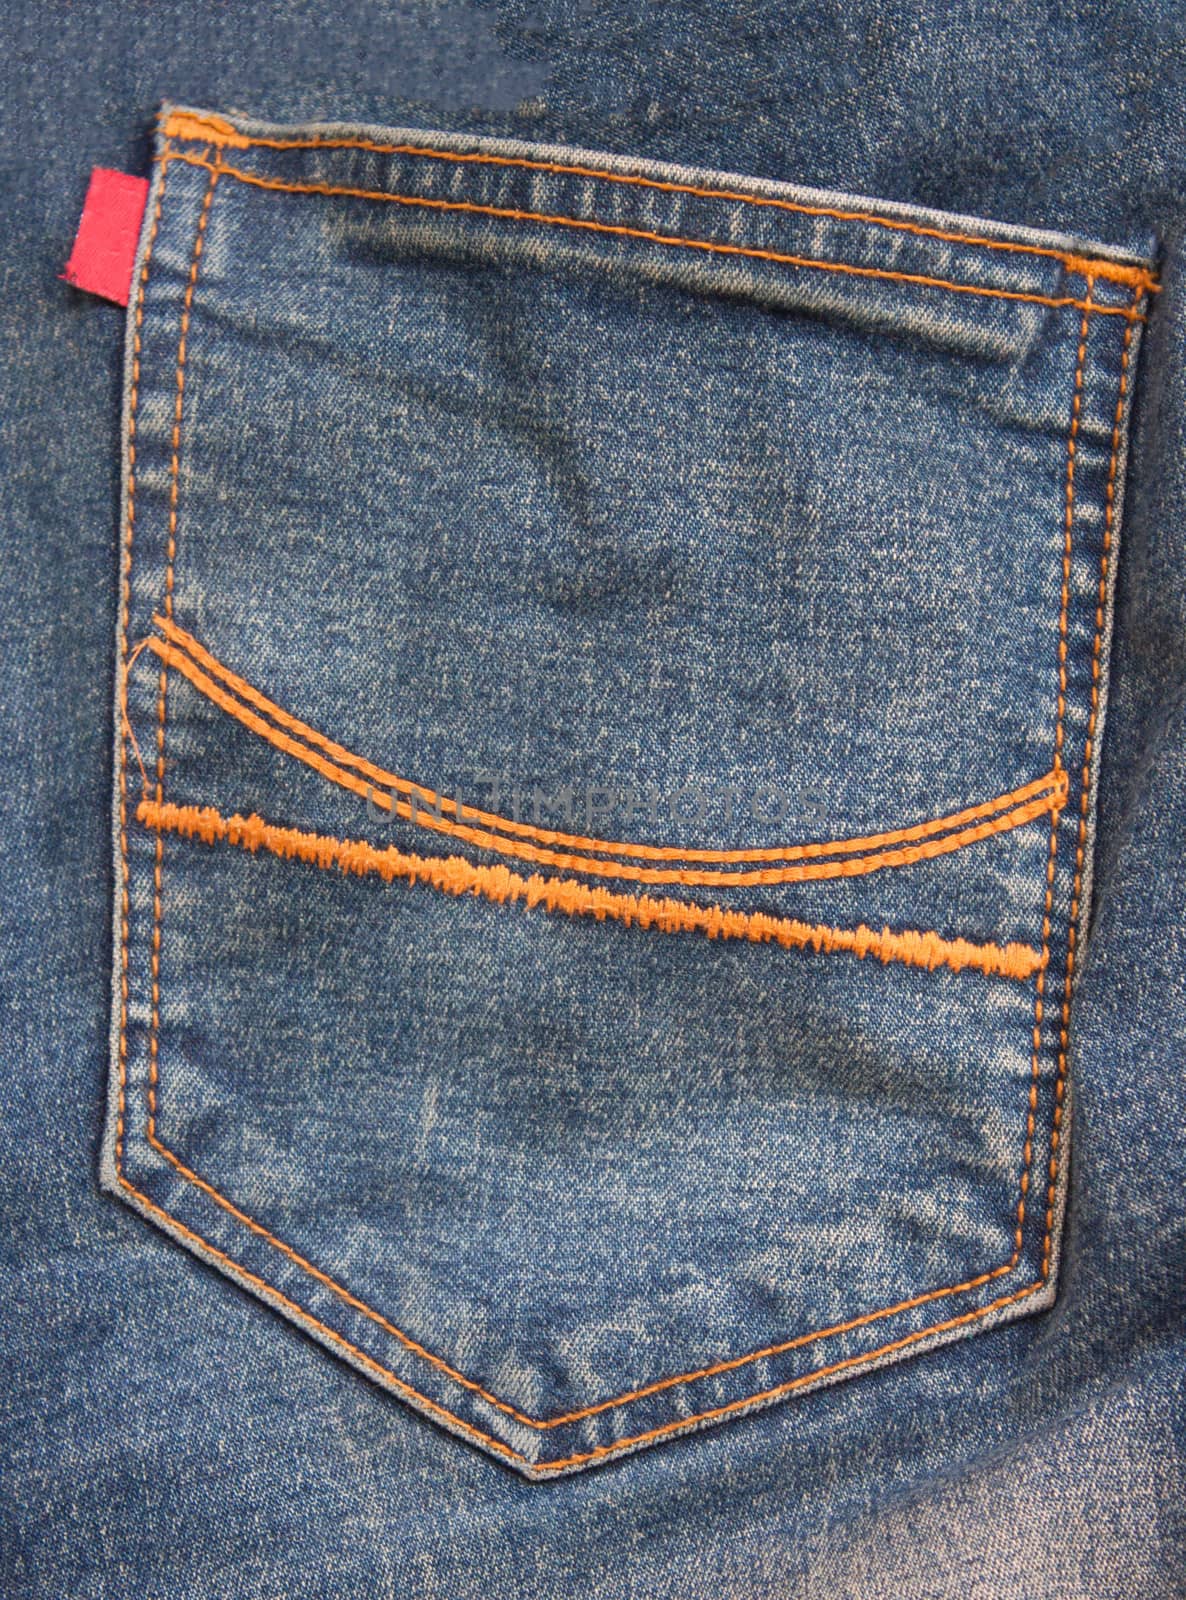 
Back pocket jeans by primzrider